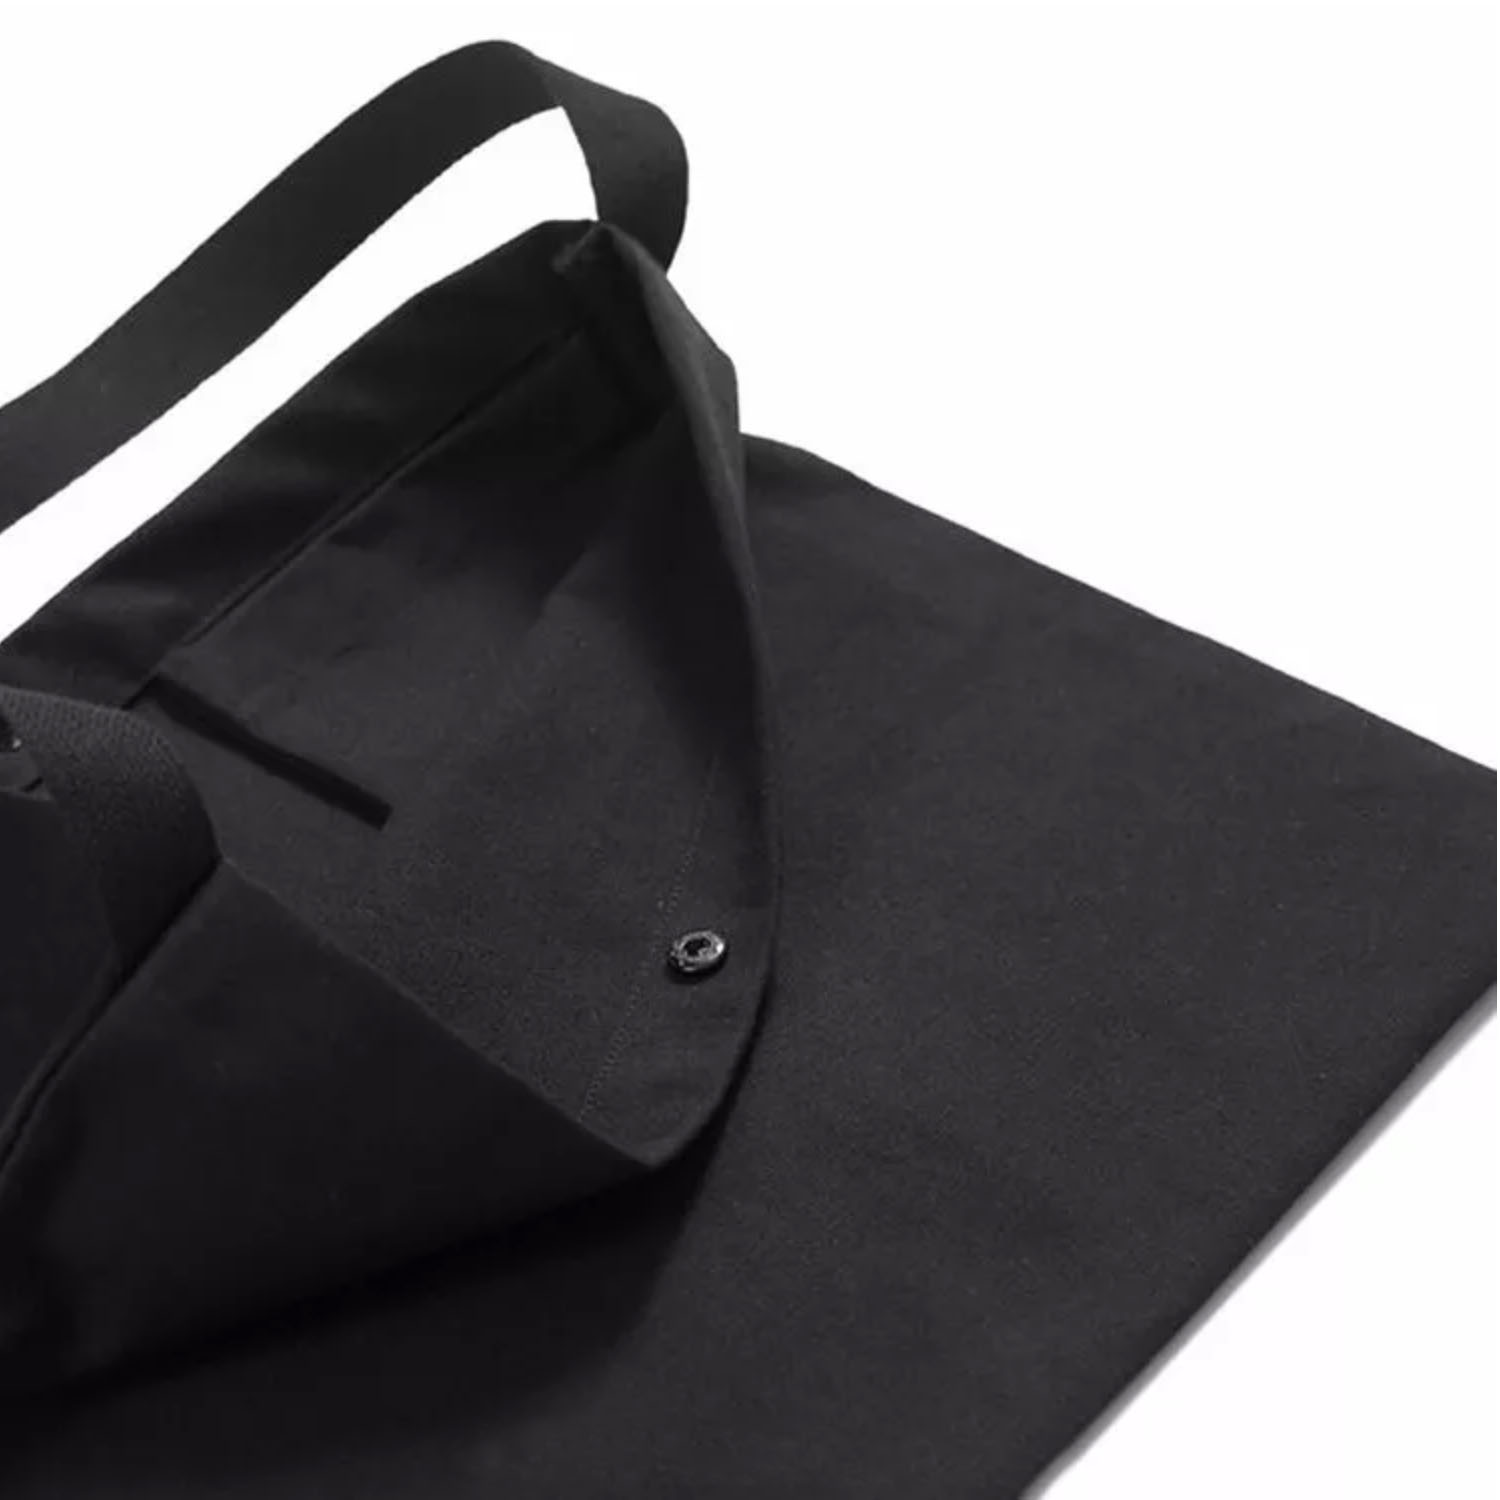 Black Cotton Canvas Musette Bag - PRESTIGE CREATIONS FACTORY